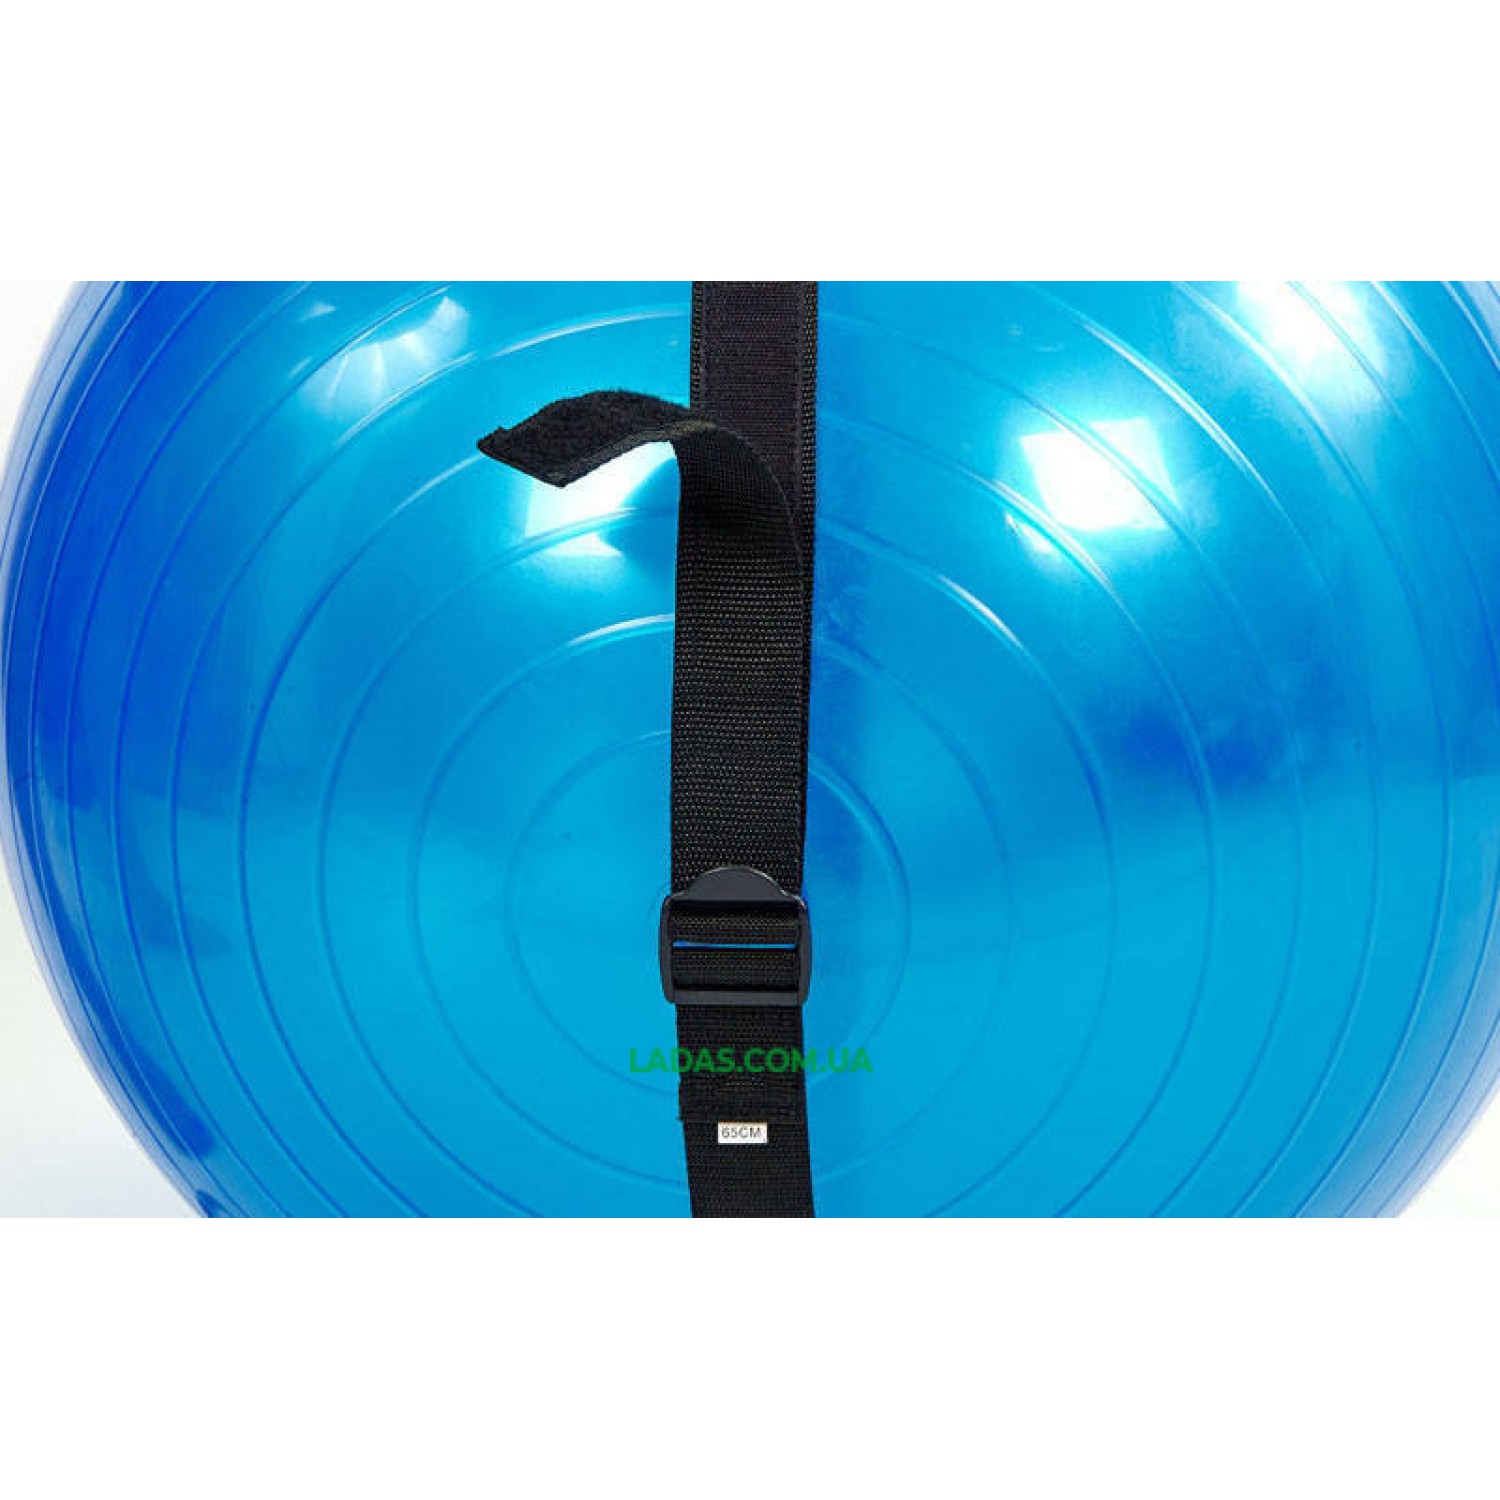 Мяч для фитнеса (фитбол) глянцевый с эспандерами и ремнем (65см, 1100г, ABS)